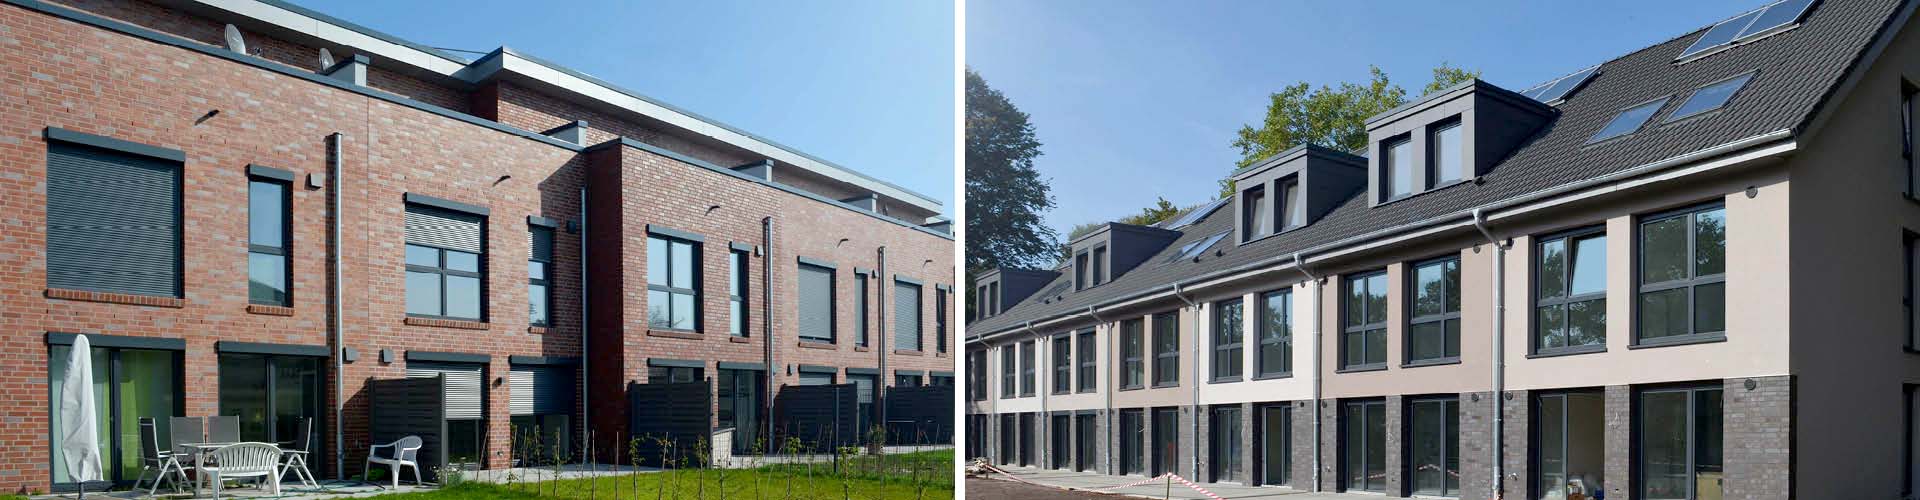 Hausfassaden mit moderner Verglasung von Schmidt Fenstertechnik